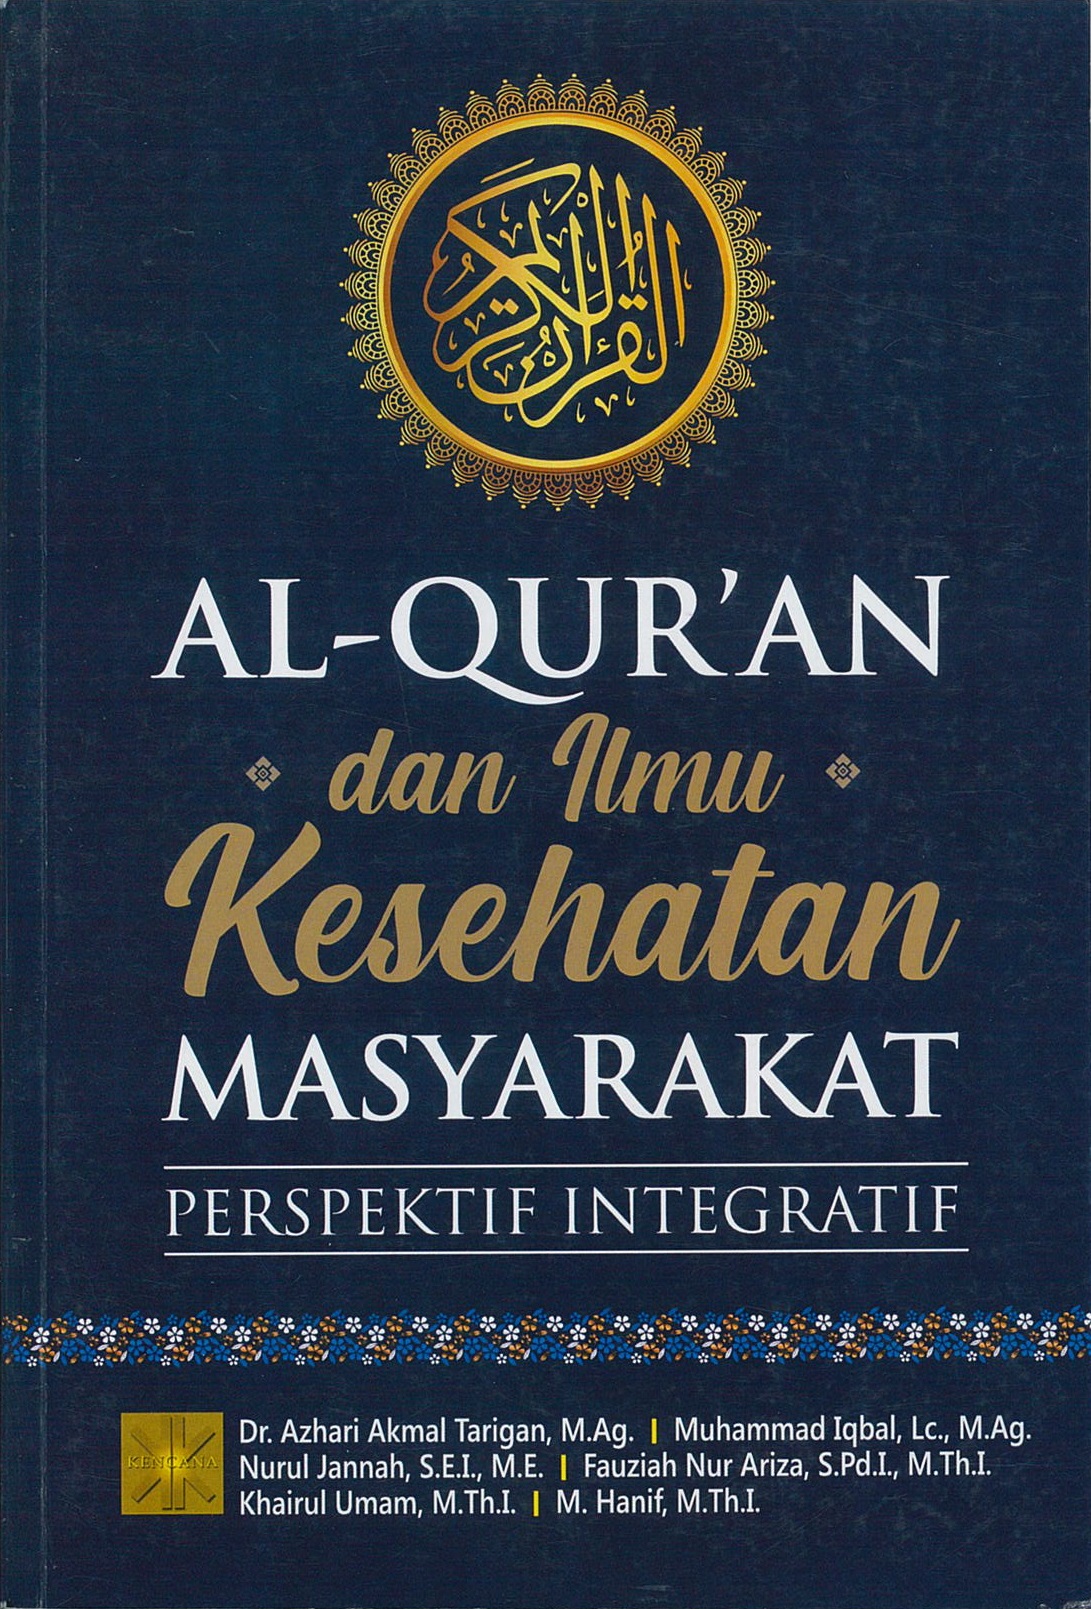 Al-qur'an dan ilmu kesehatan masyarakat :  perspektif integratif